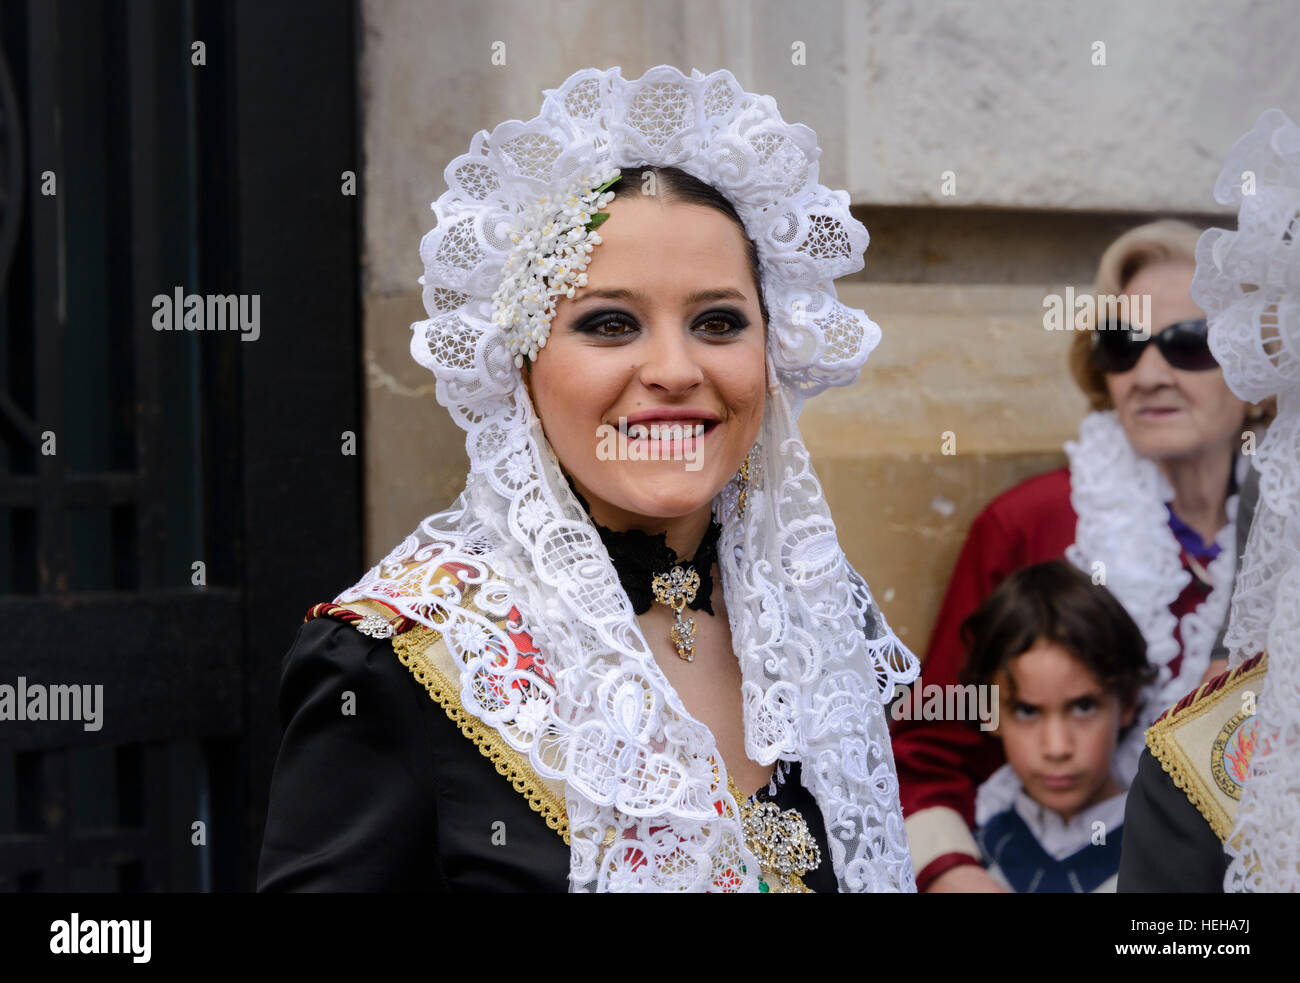 Jeune fille espagnole en costume traditionnel y compris voile mantille dentelle ou un châle pendant ou las Fallas à Valence Espagne festival Falles Banque D'Images